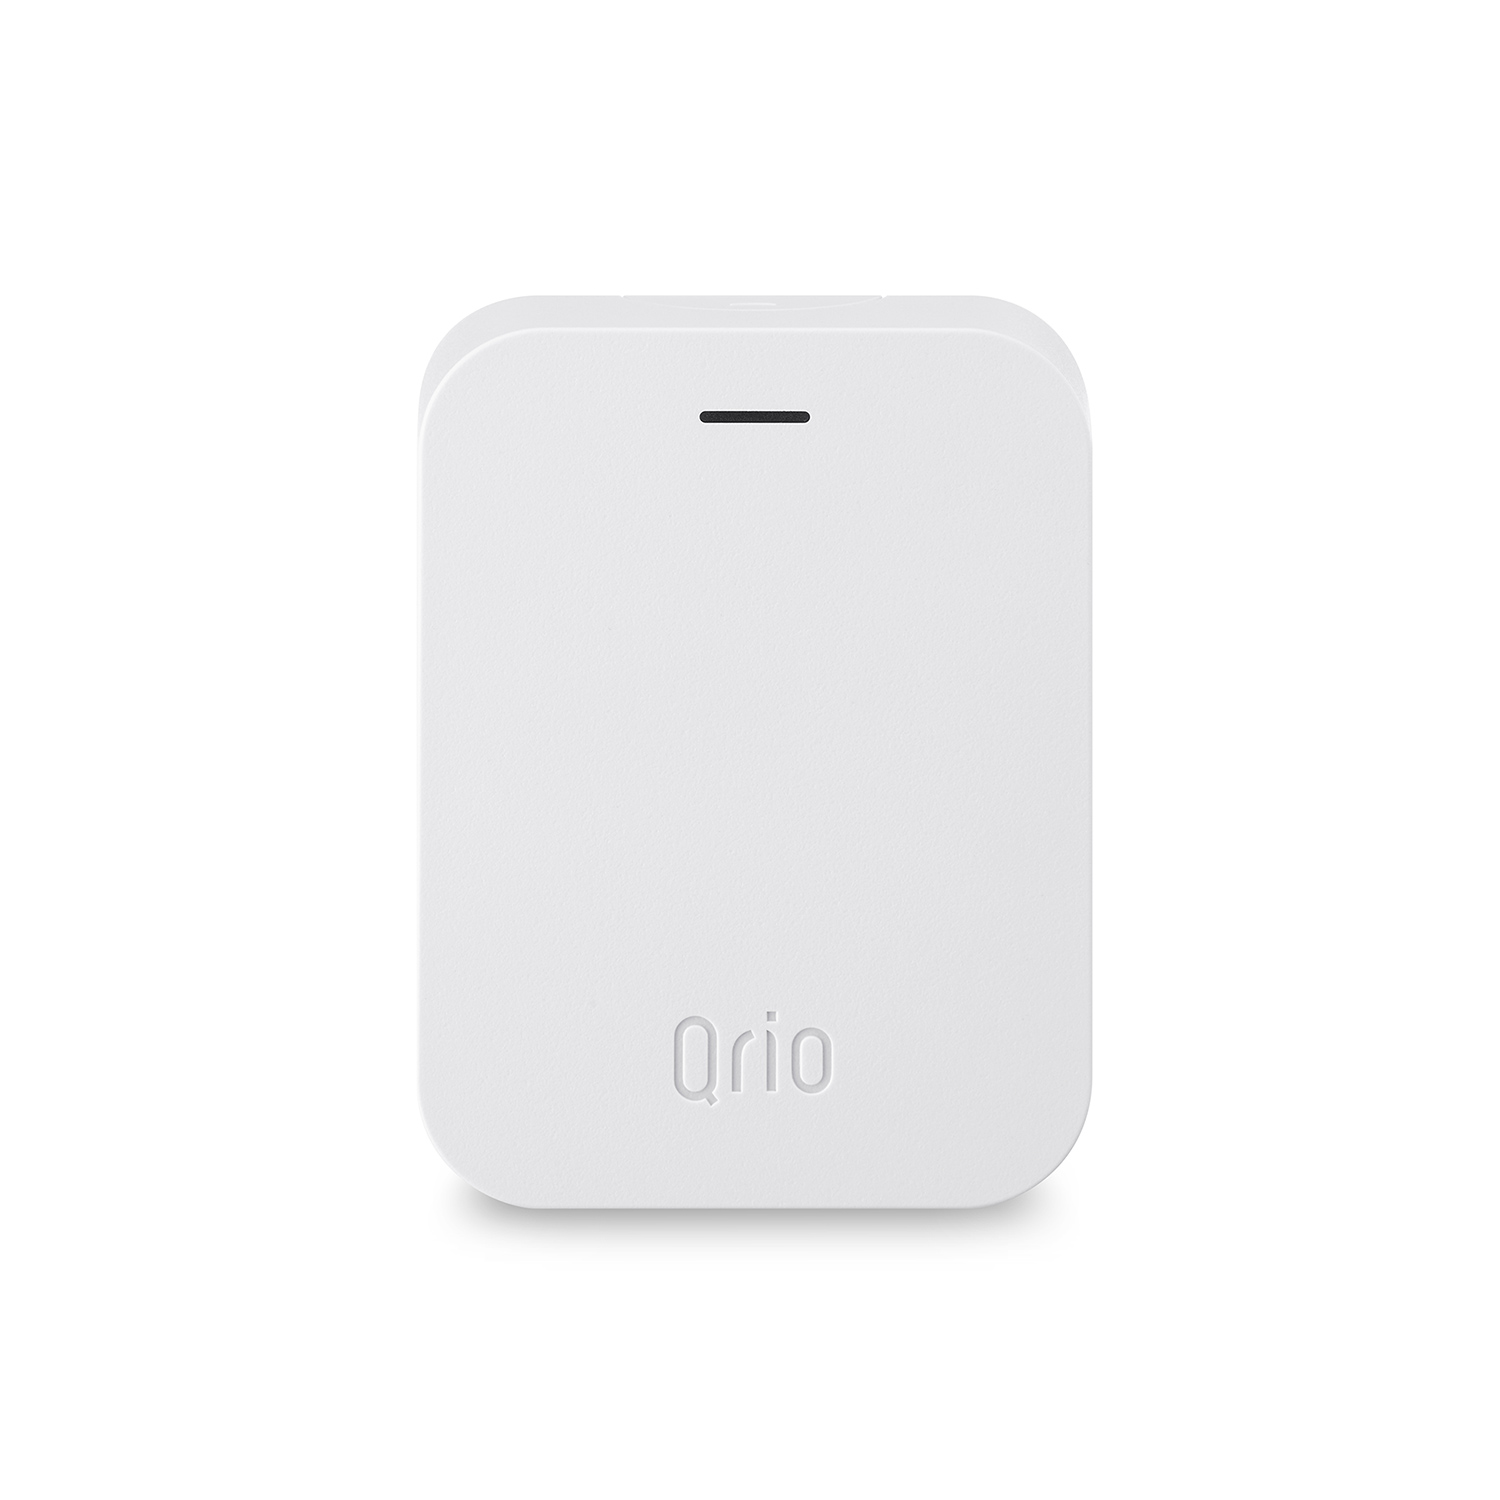 Qrio Hub （キュリオハブ）Q-H1 – qriostore